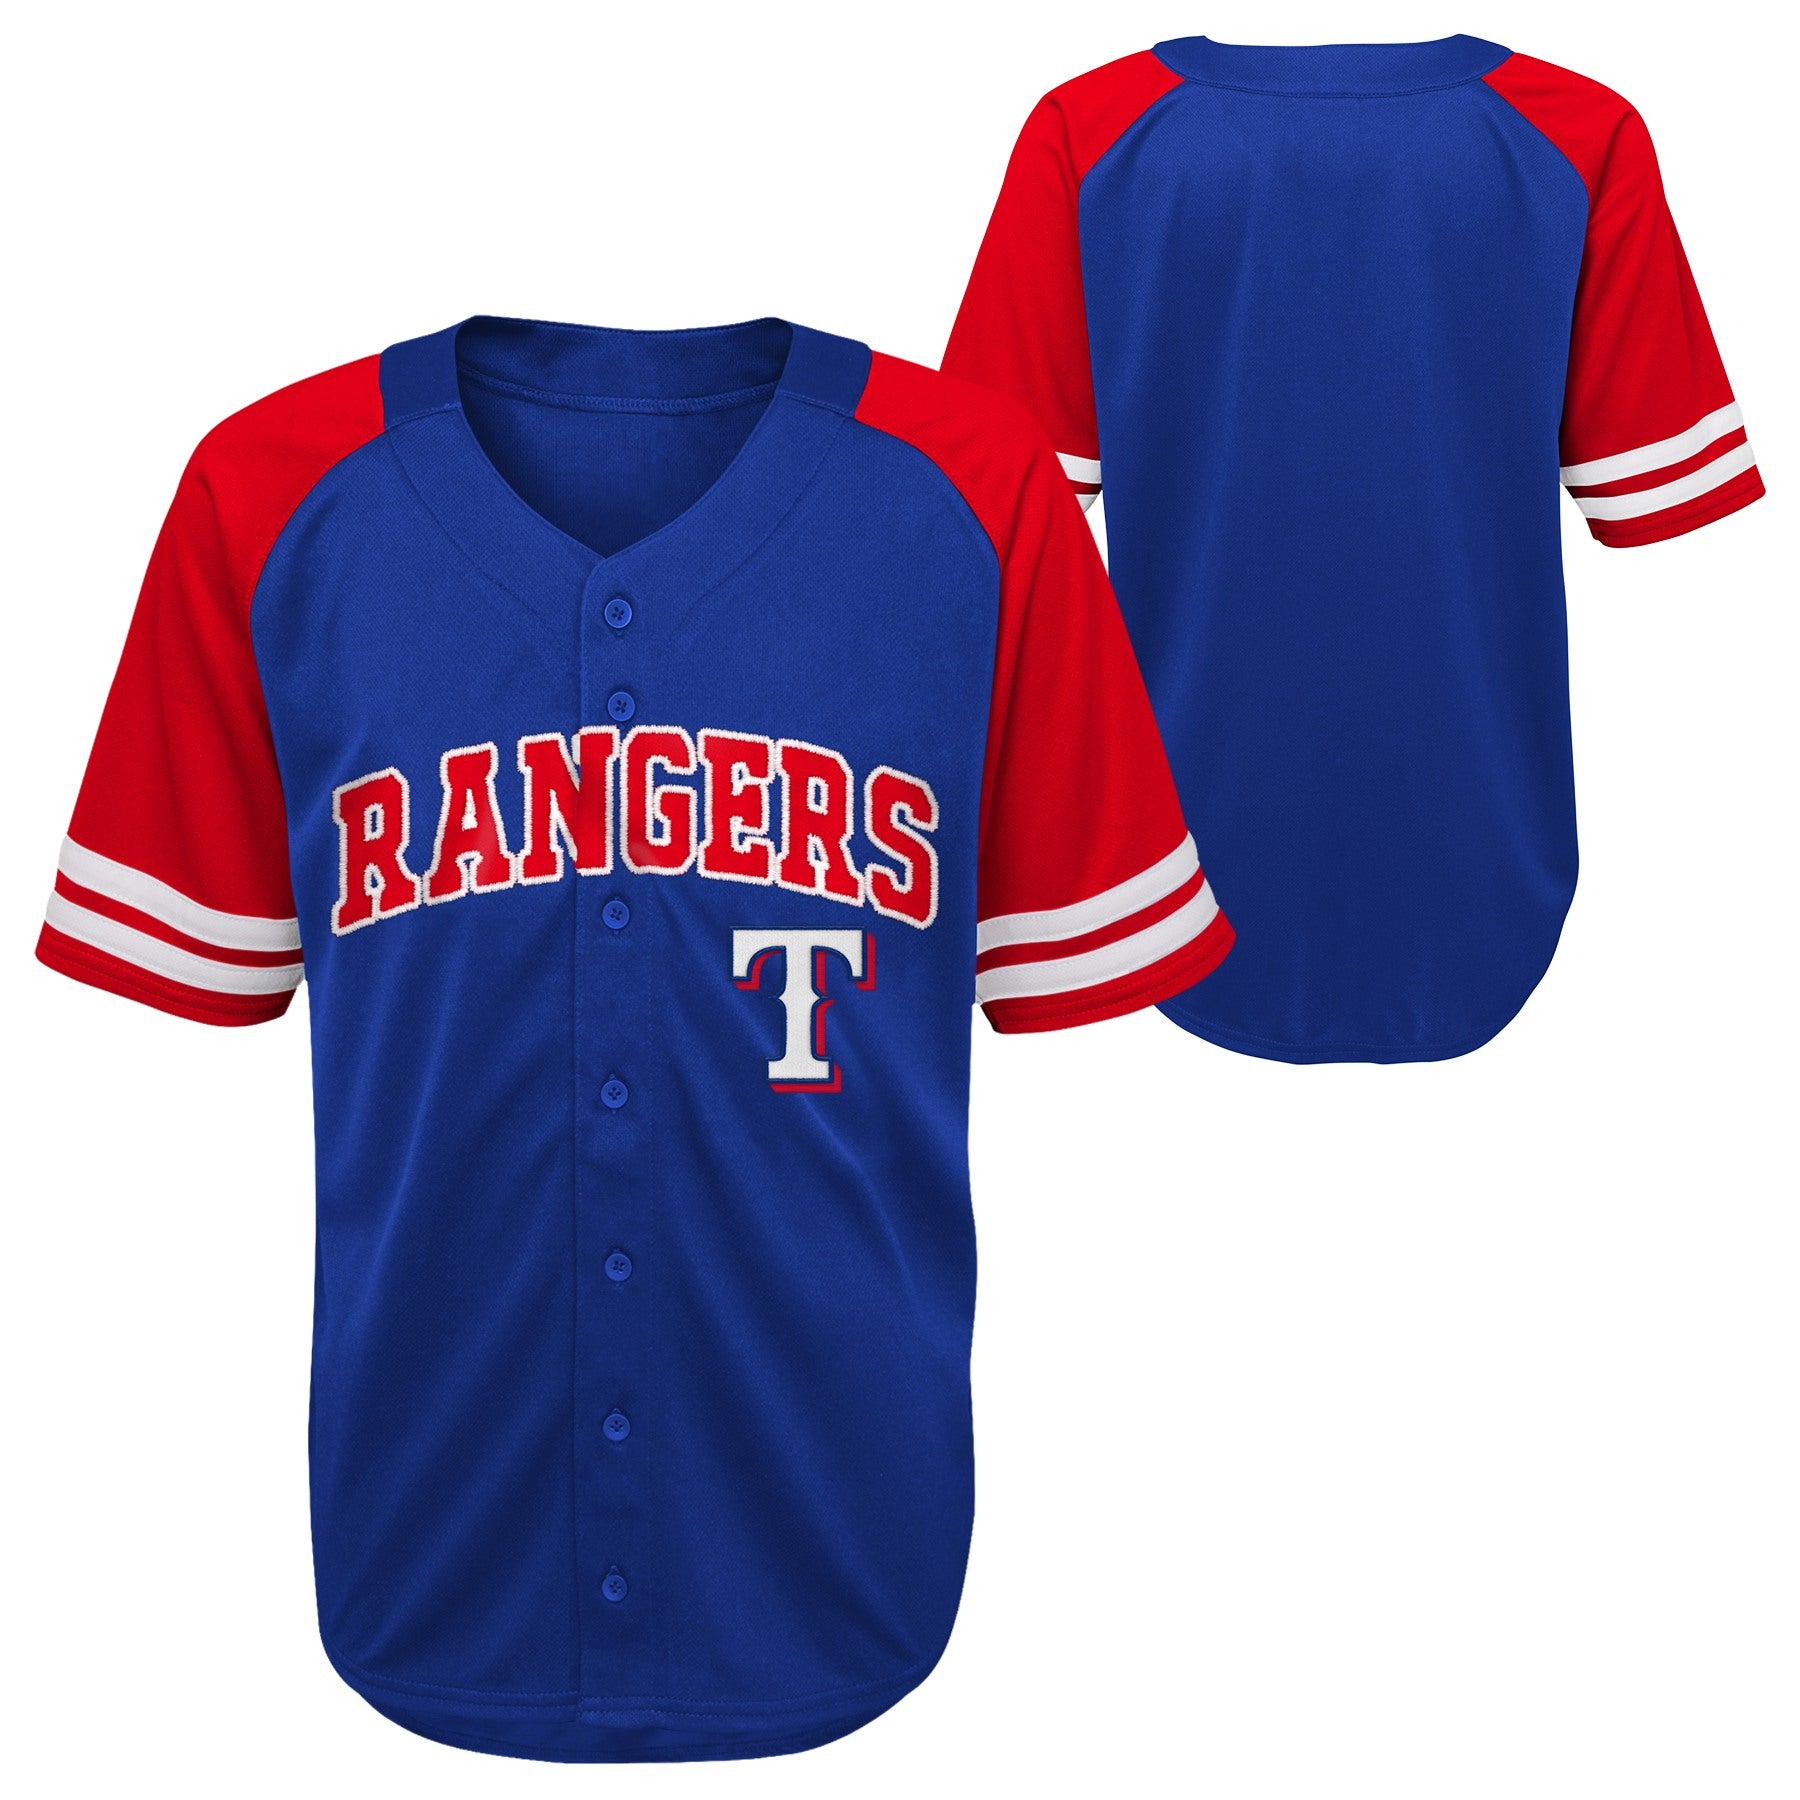 Outerstuff Kids MLB Texas Rangers Button Up Baseball Team Home